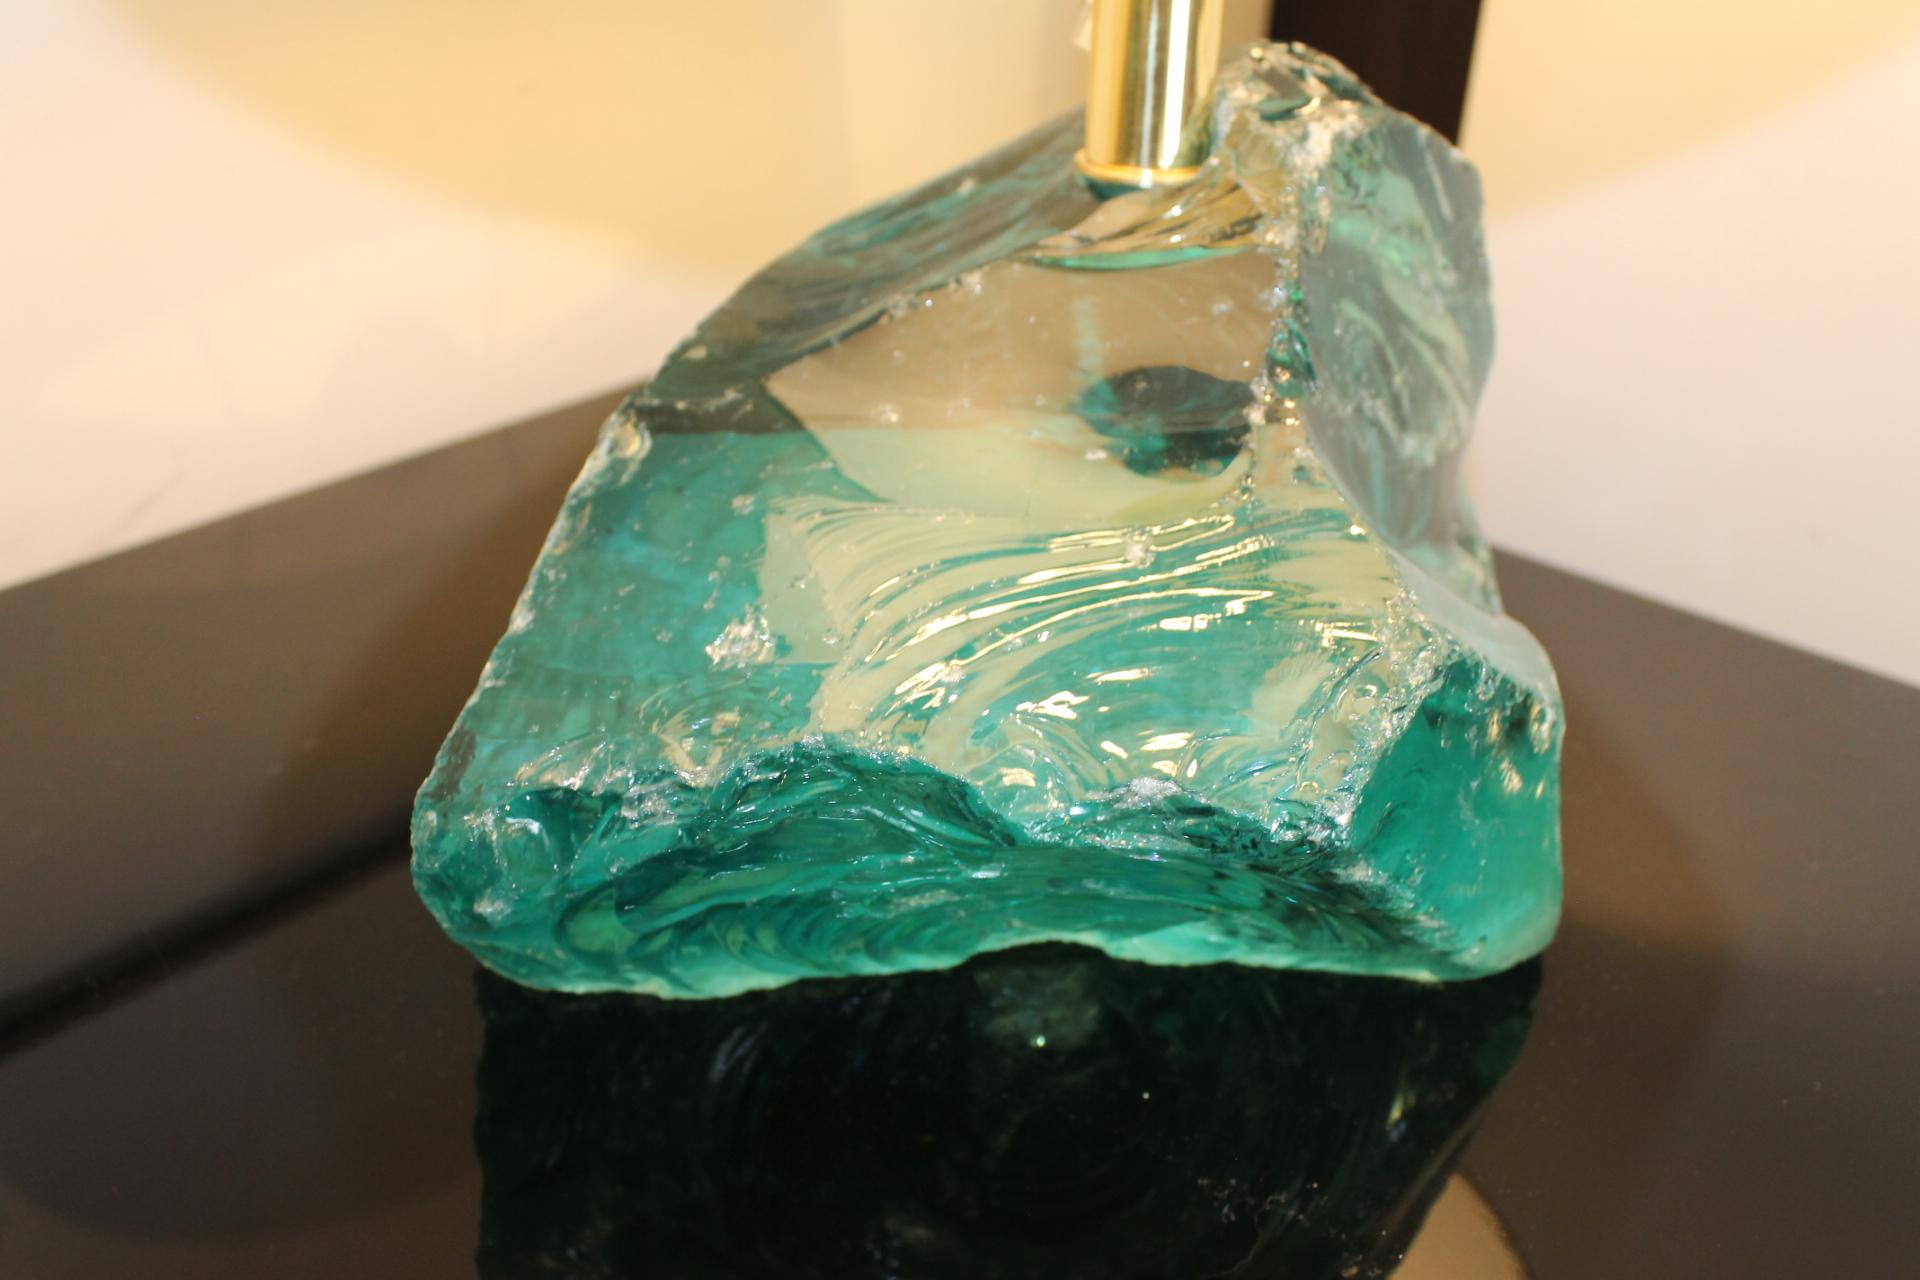 Paire de lampes Murano assimilées à une pierre de roche, couleur de bleu turquoise transparent.
Elles sont dotées d'un abat-jour ovale blanc
Moderniste